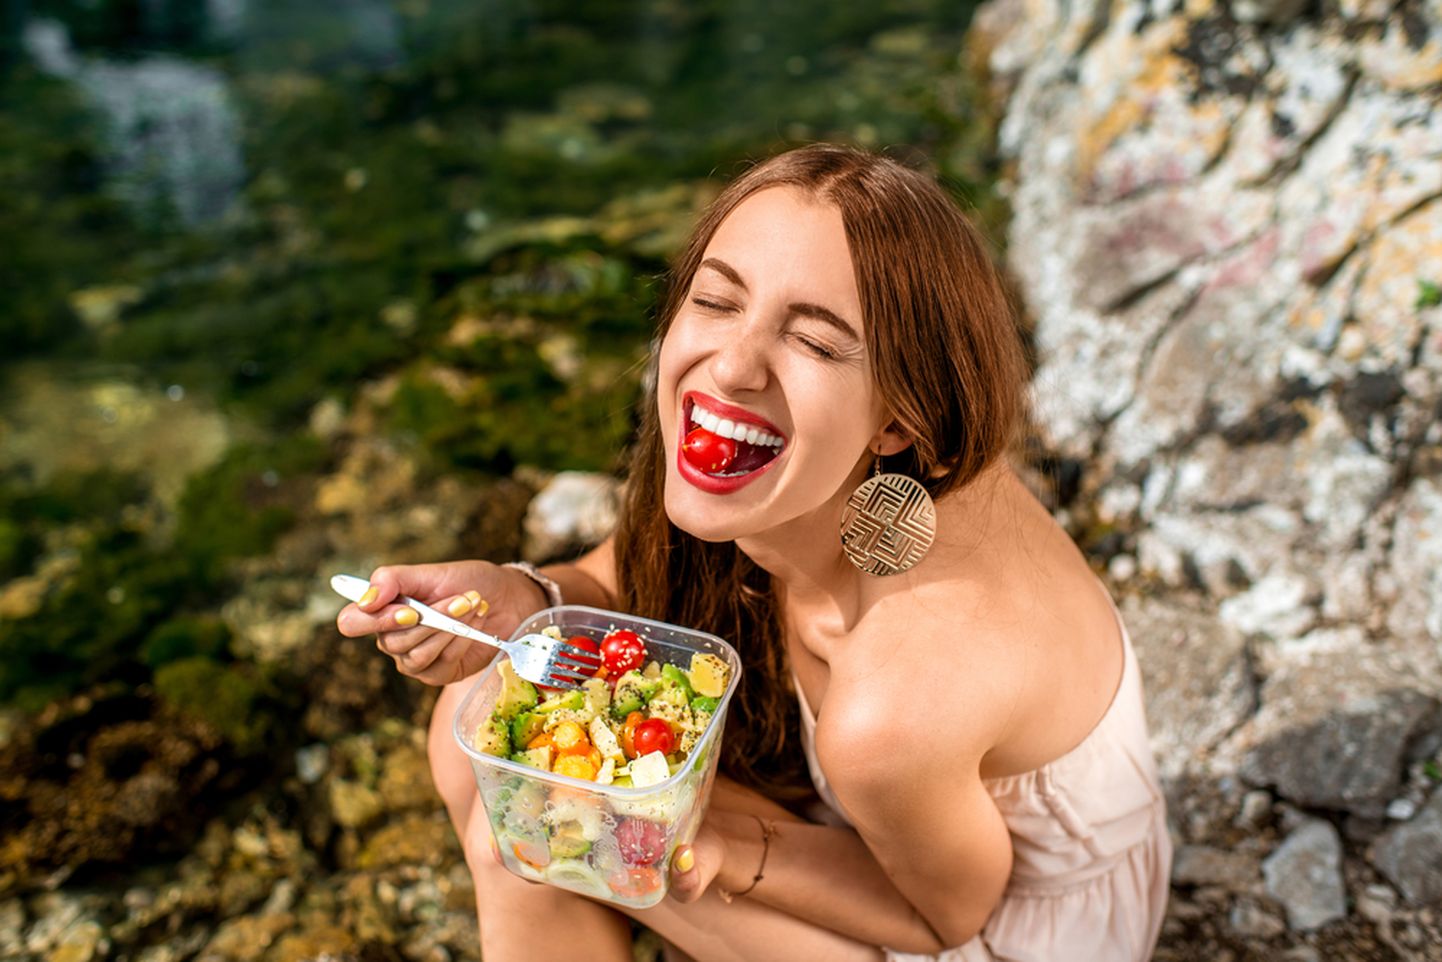 Naine sööb salatit. Pilt on illustratiivne.